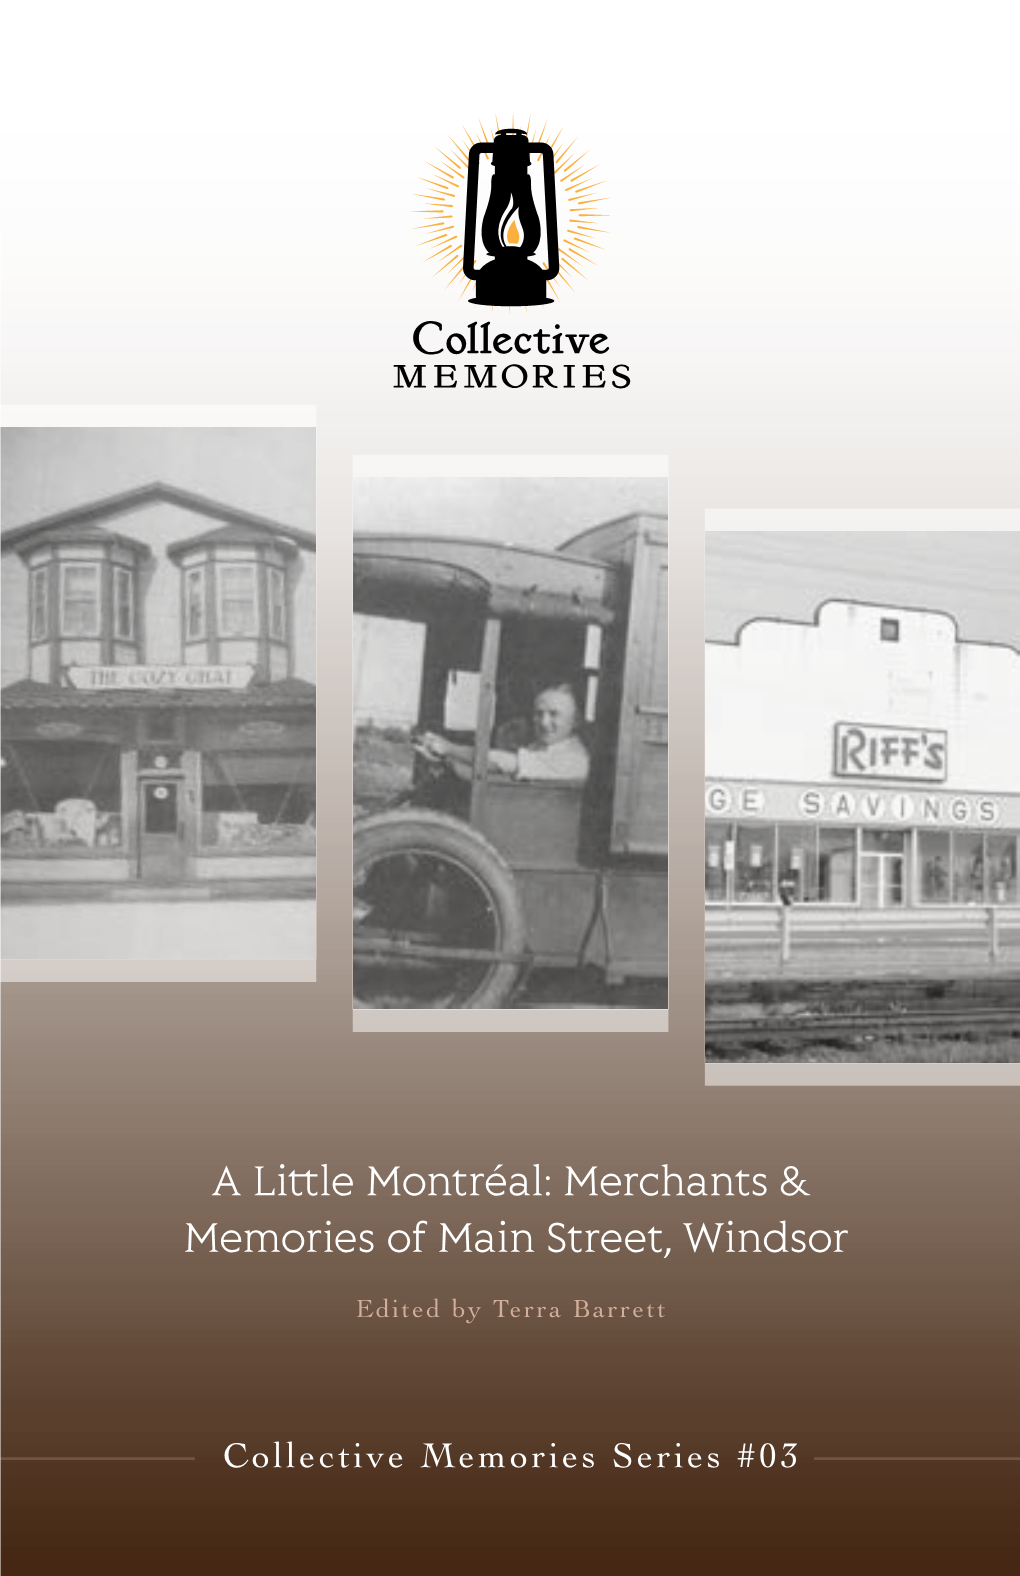 Merchants & Memories of Main Street, Windsor